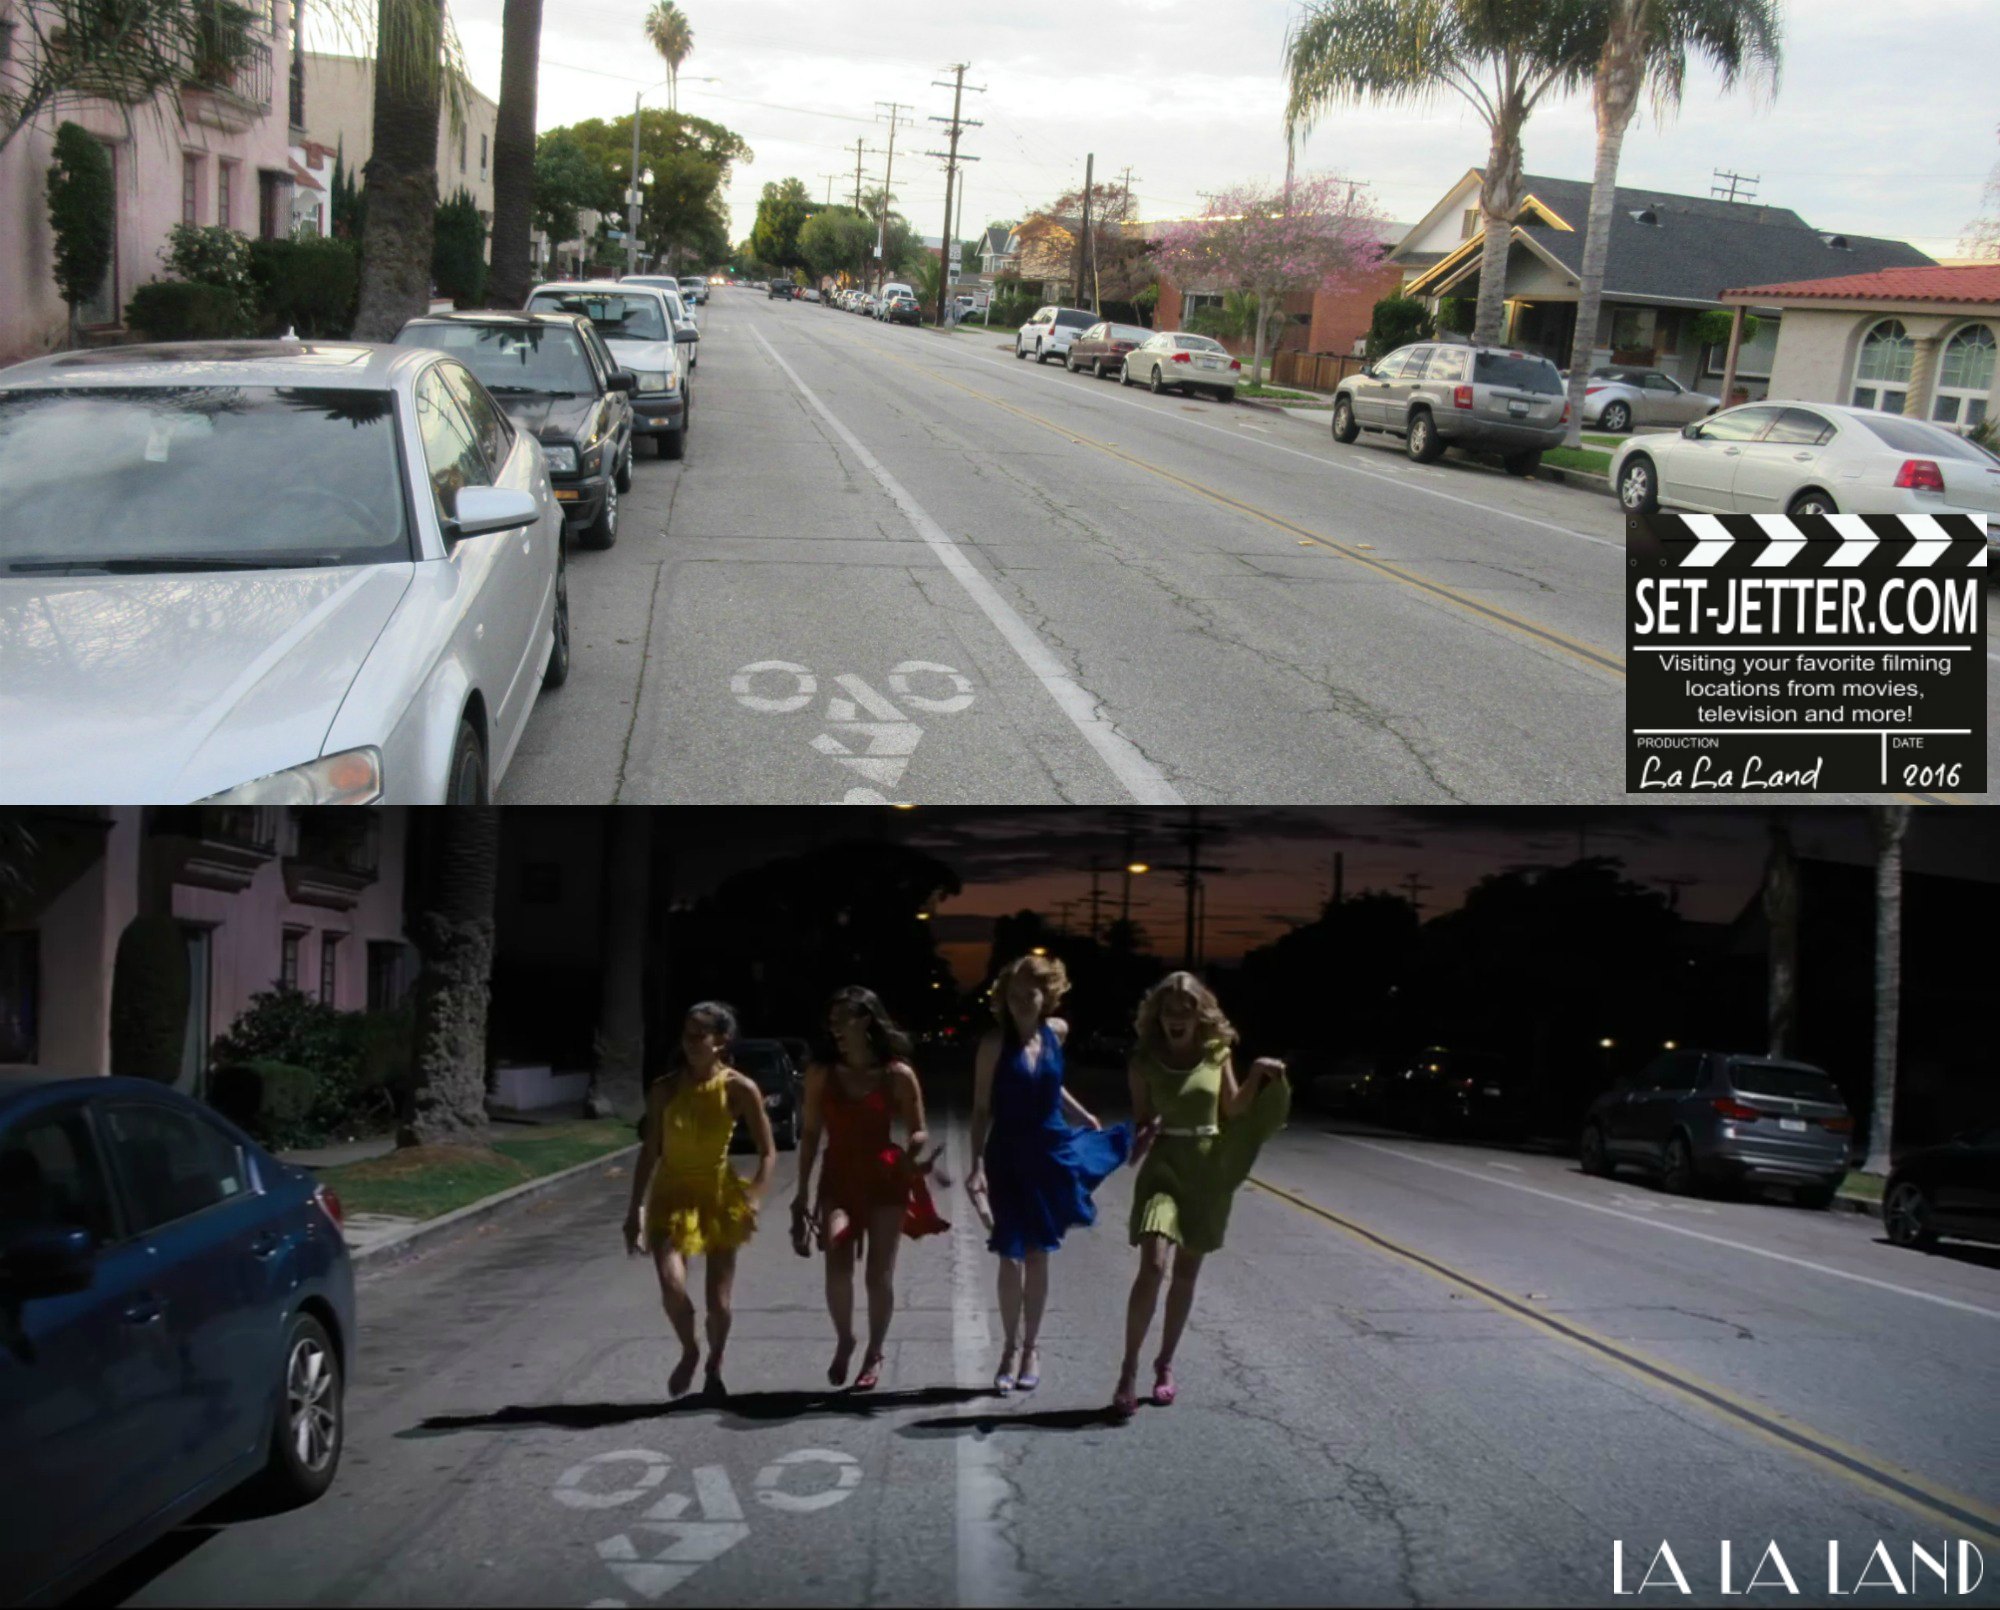 La La Land comparison 64.jpg